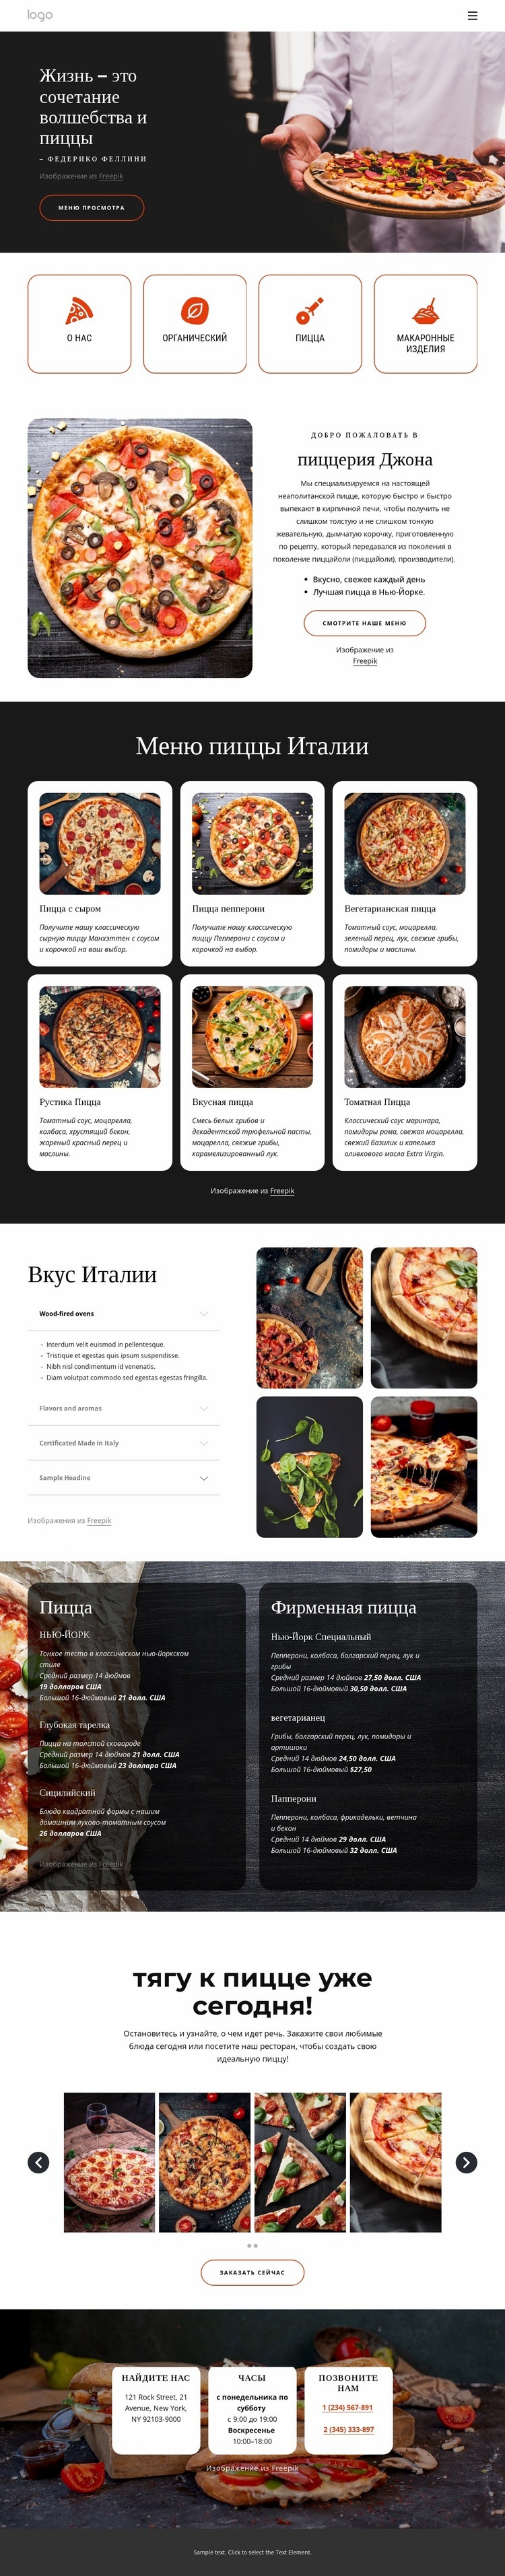 Пиццерия для всей семьи HTML5 шаблон